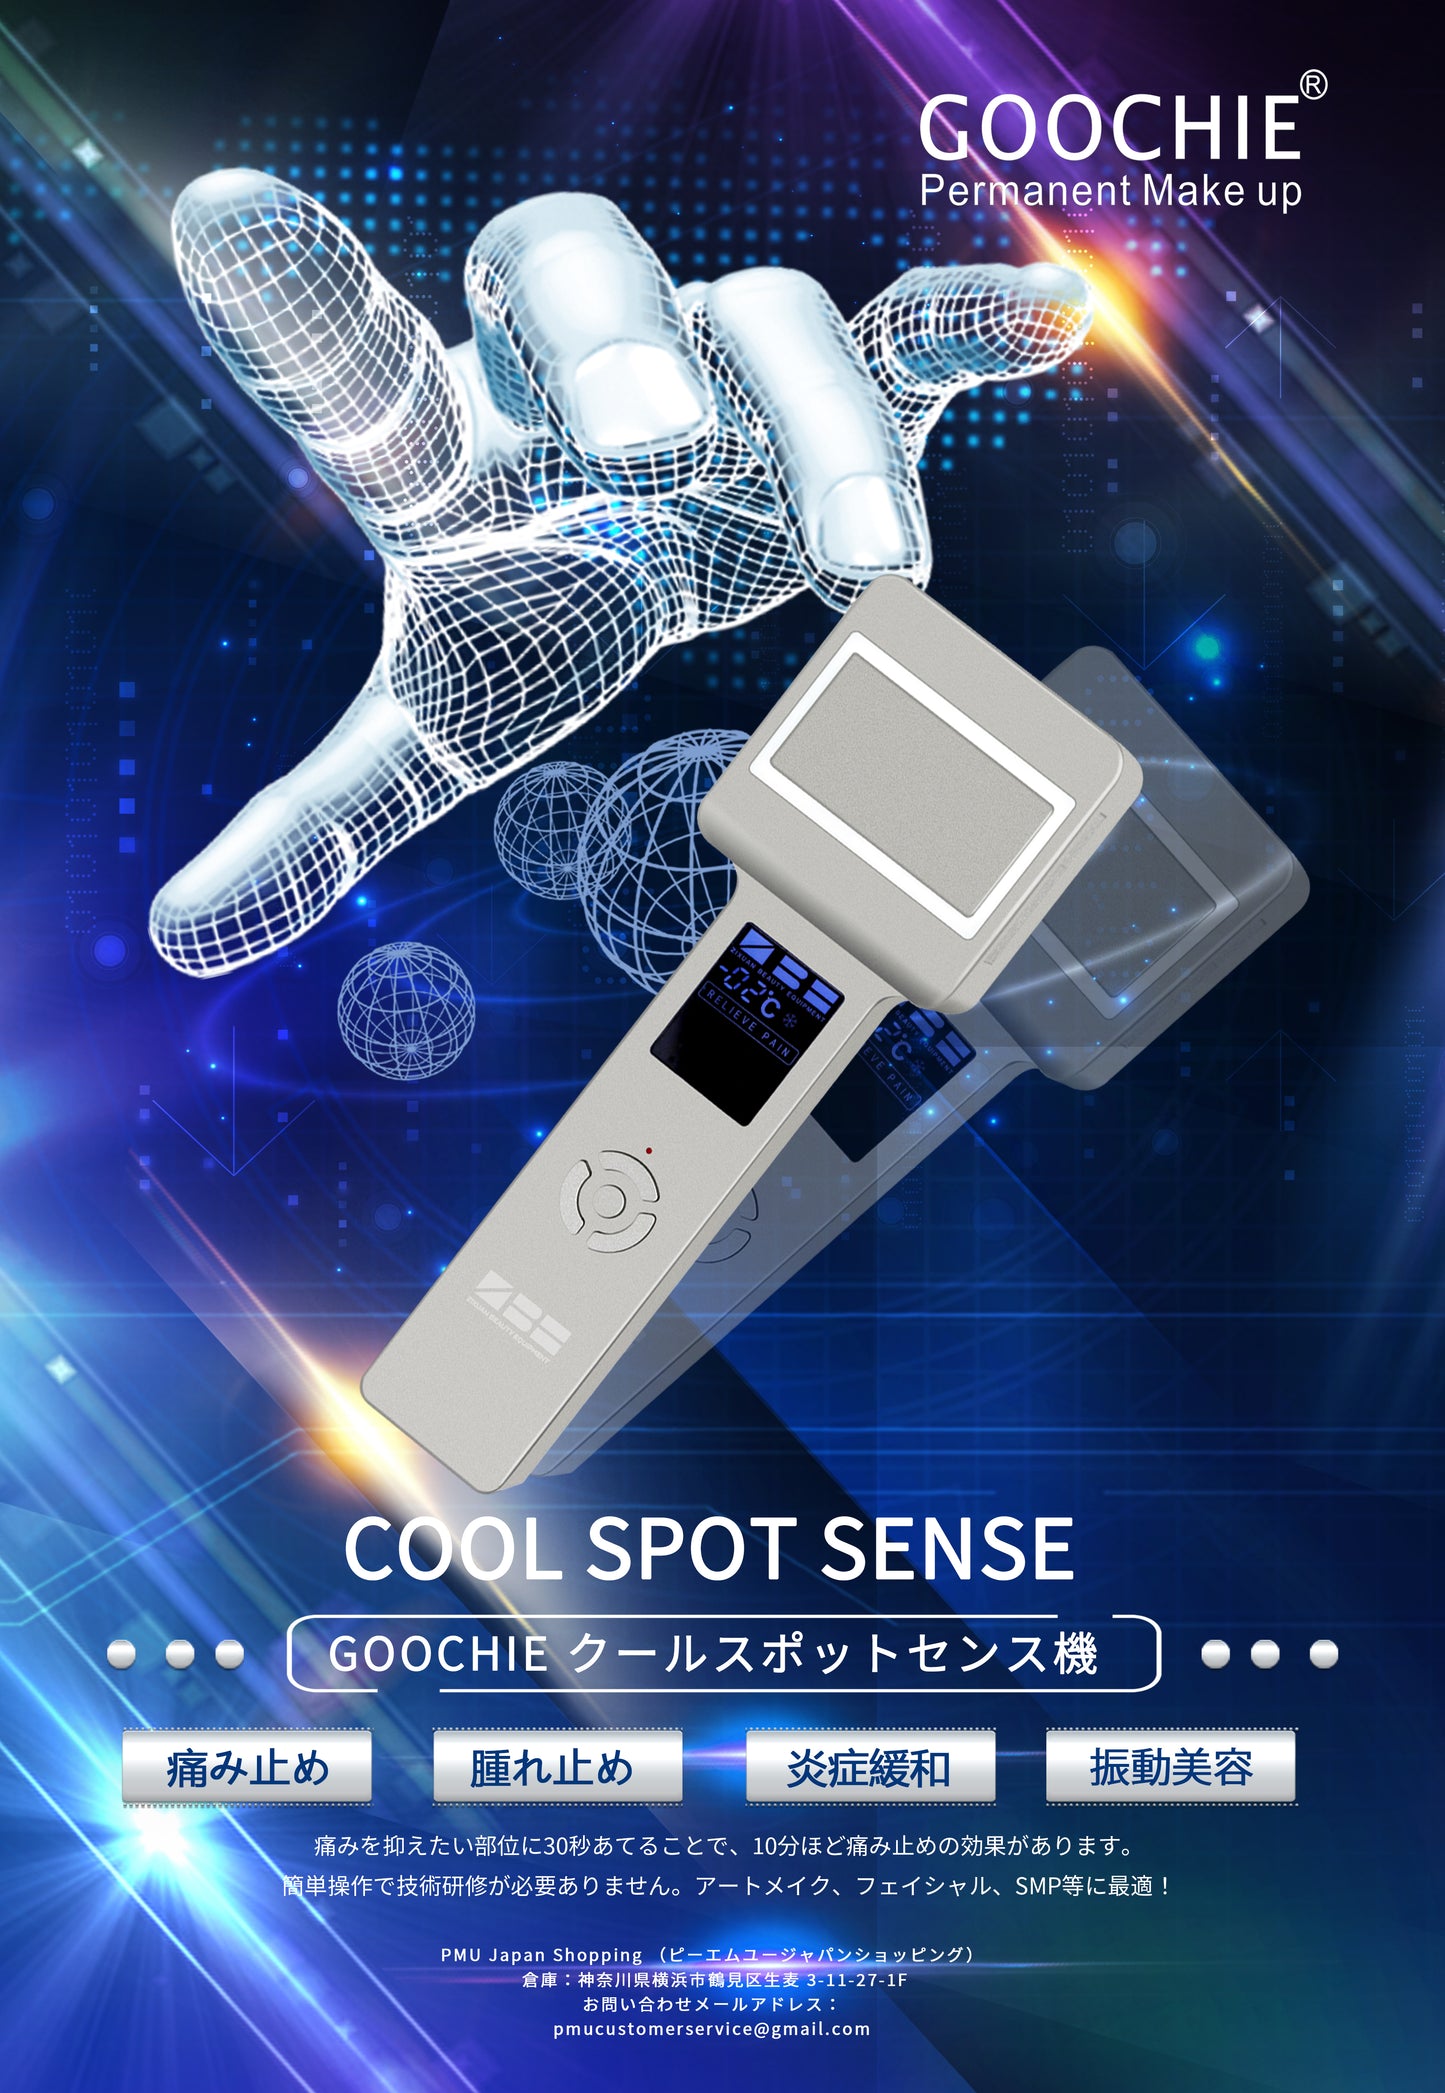 Cool spot sense